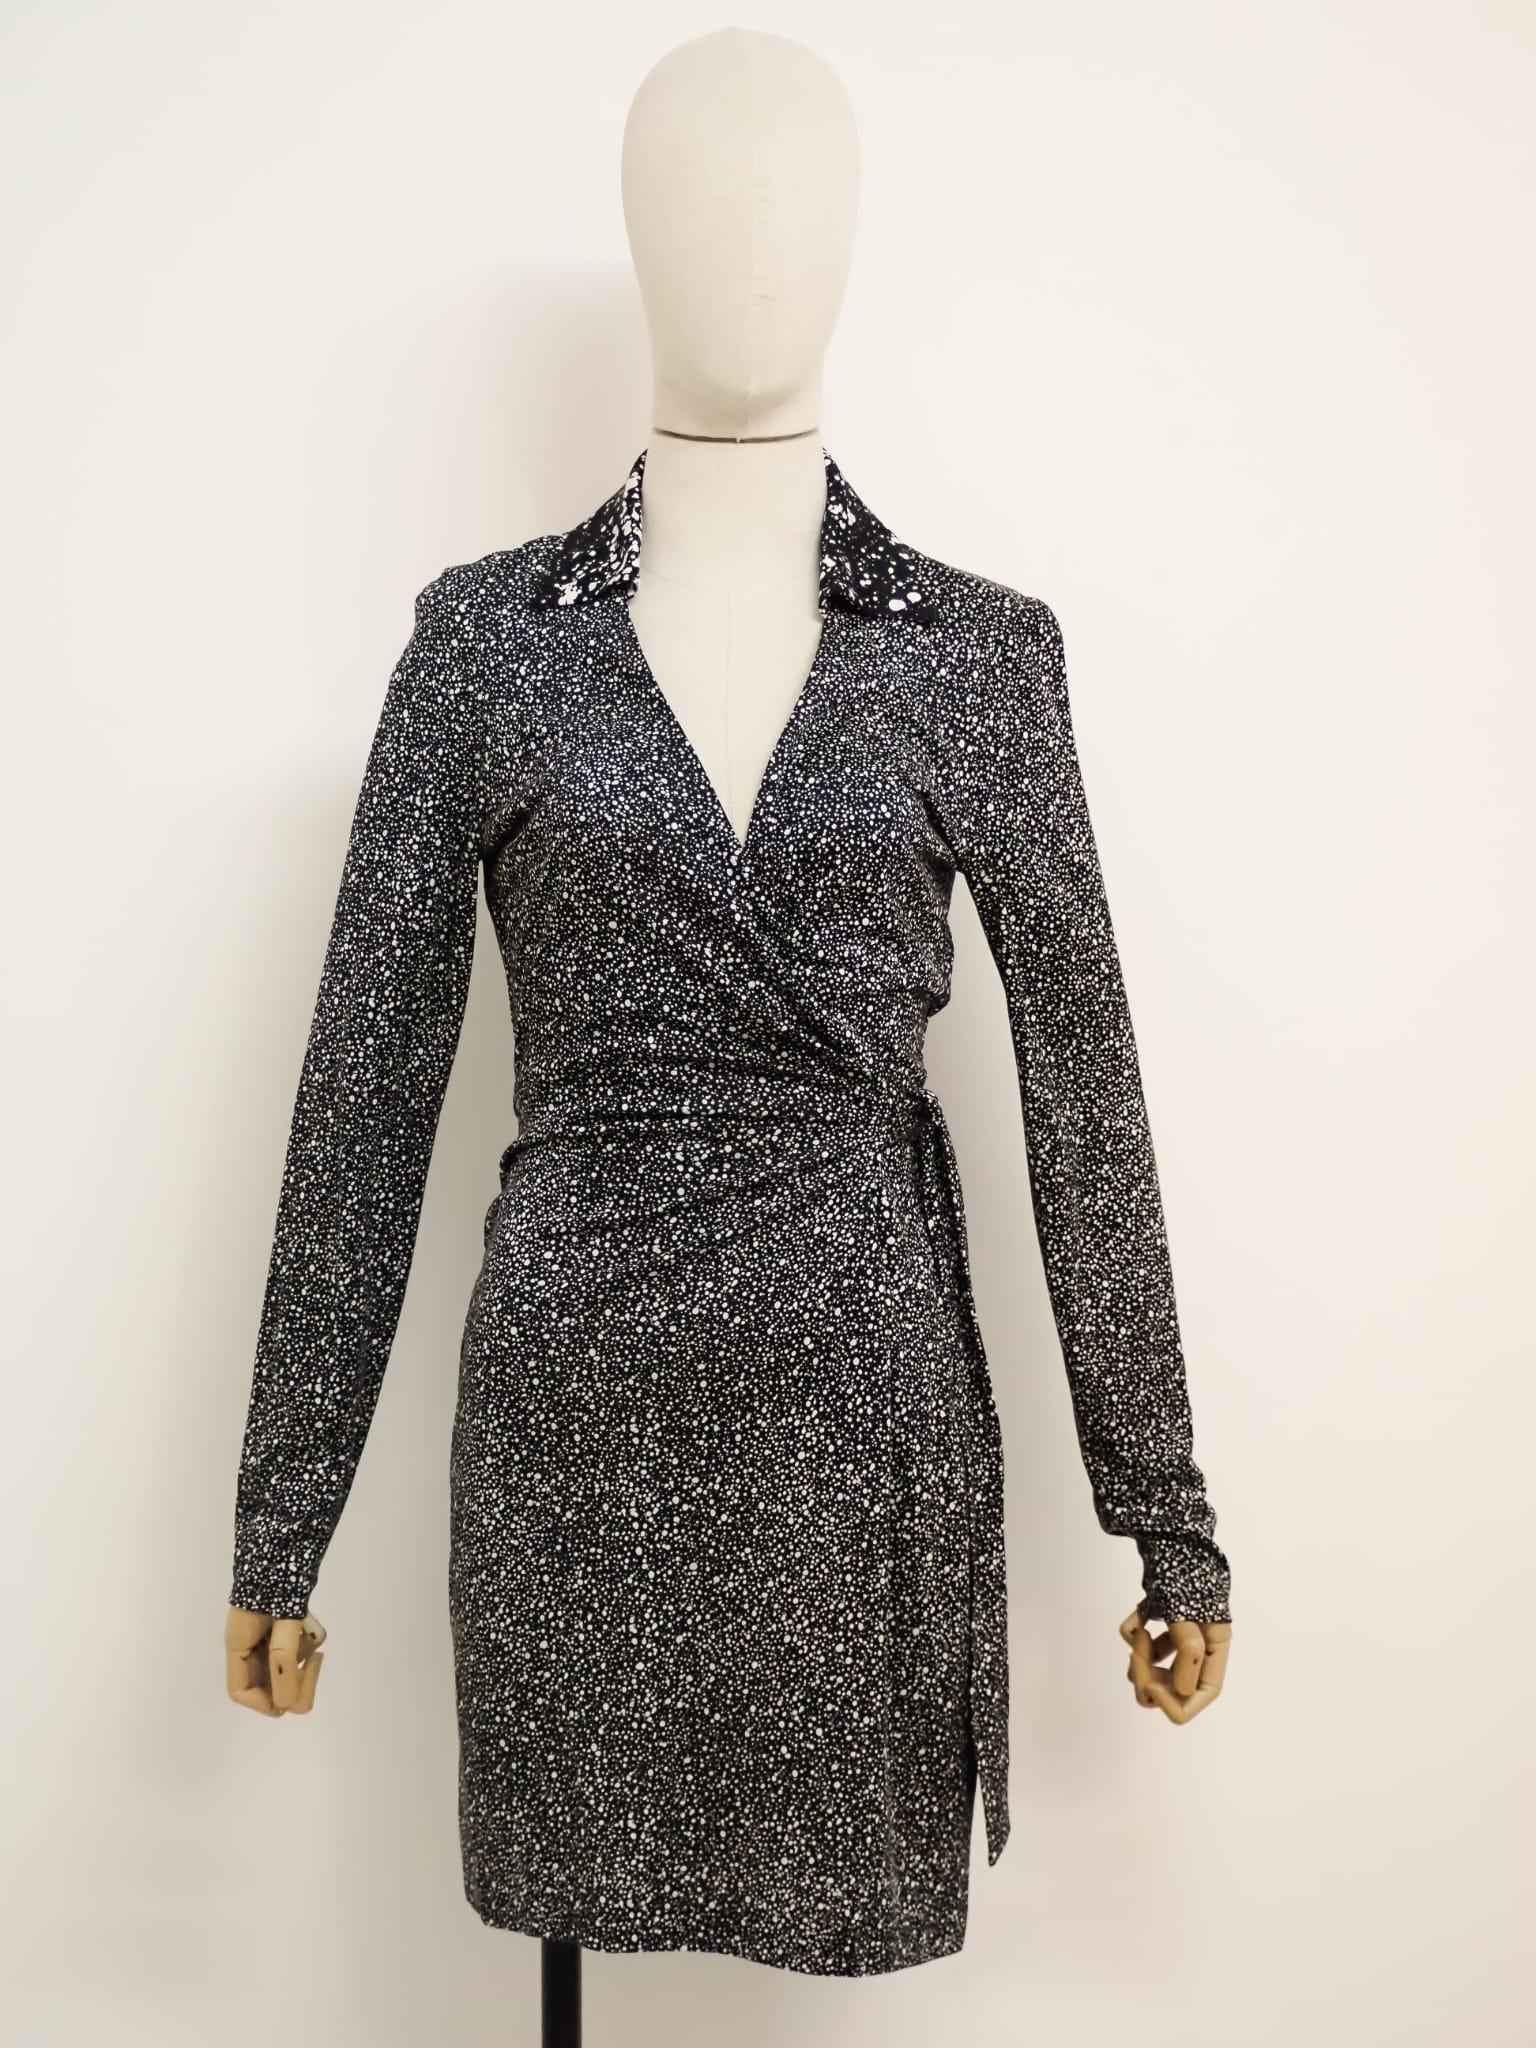 Diane von Furstenberg dress In Excellent Condition For Sale In Capri, IT